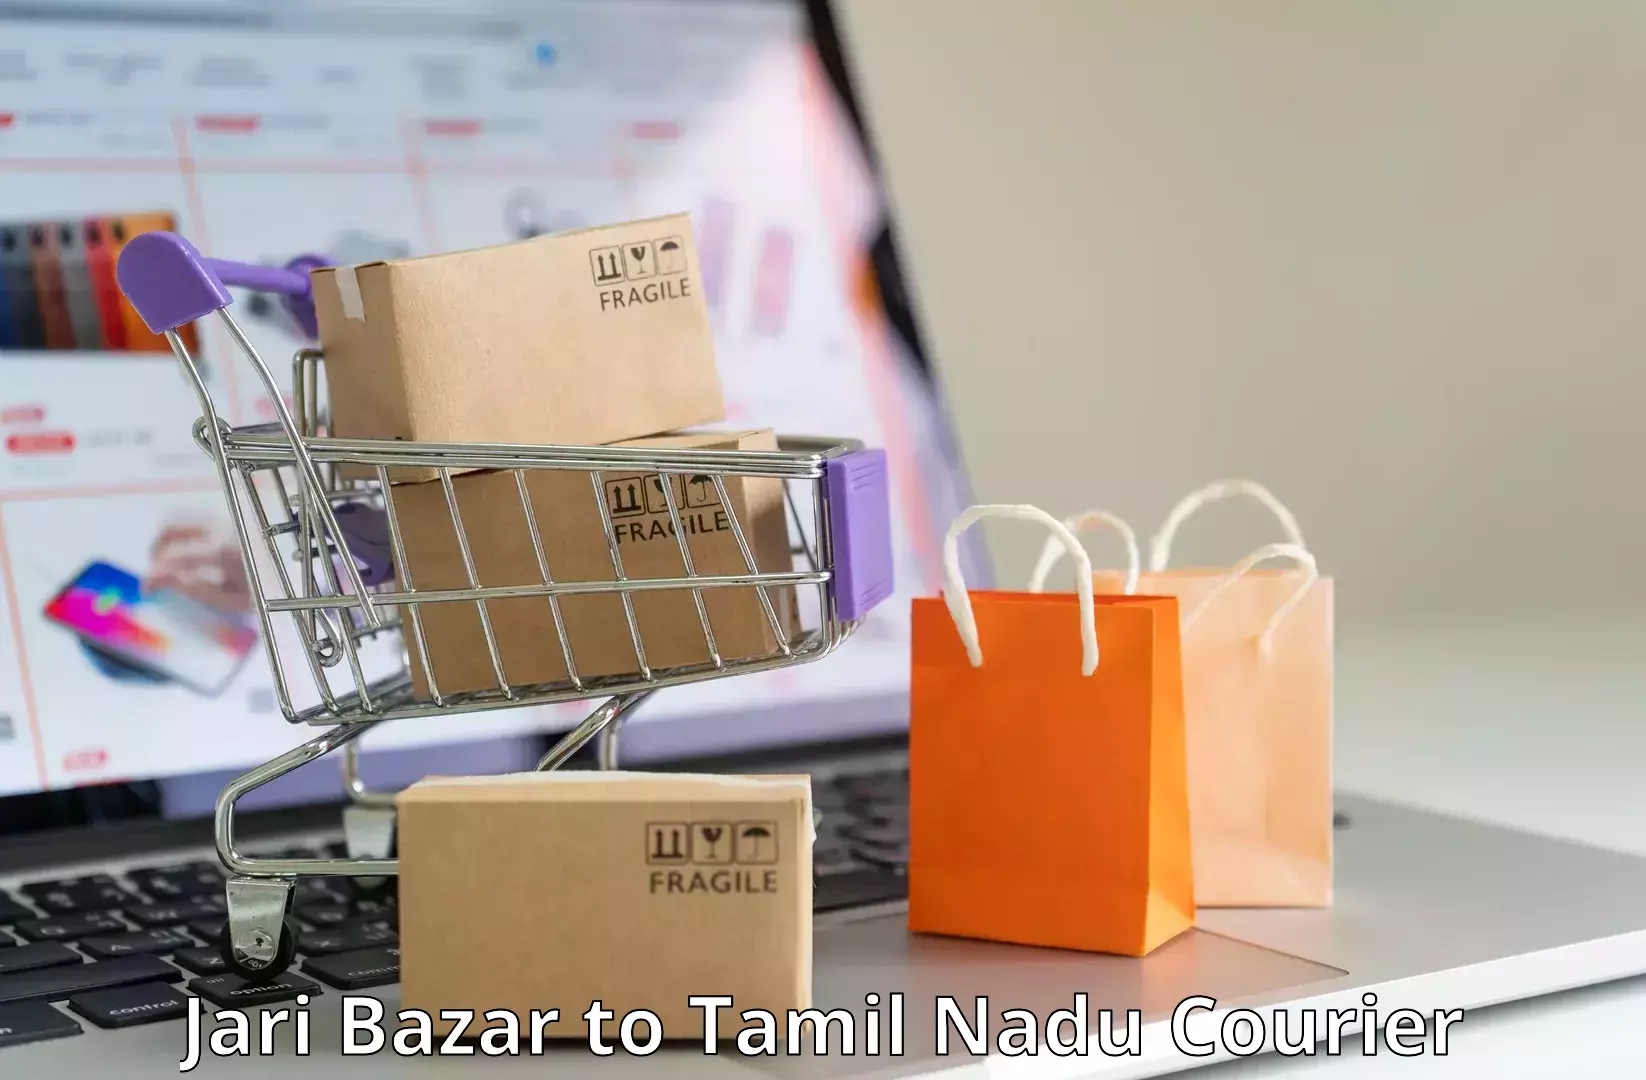 Online courier booking Jari Bazar to Tamil Nadu